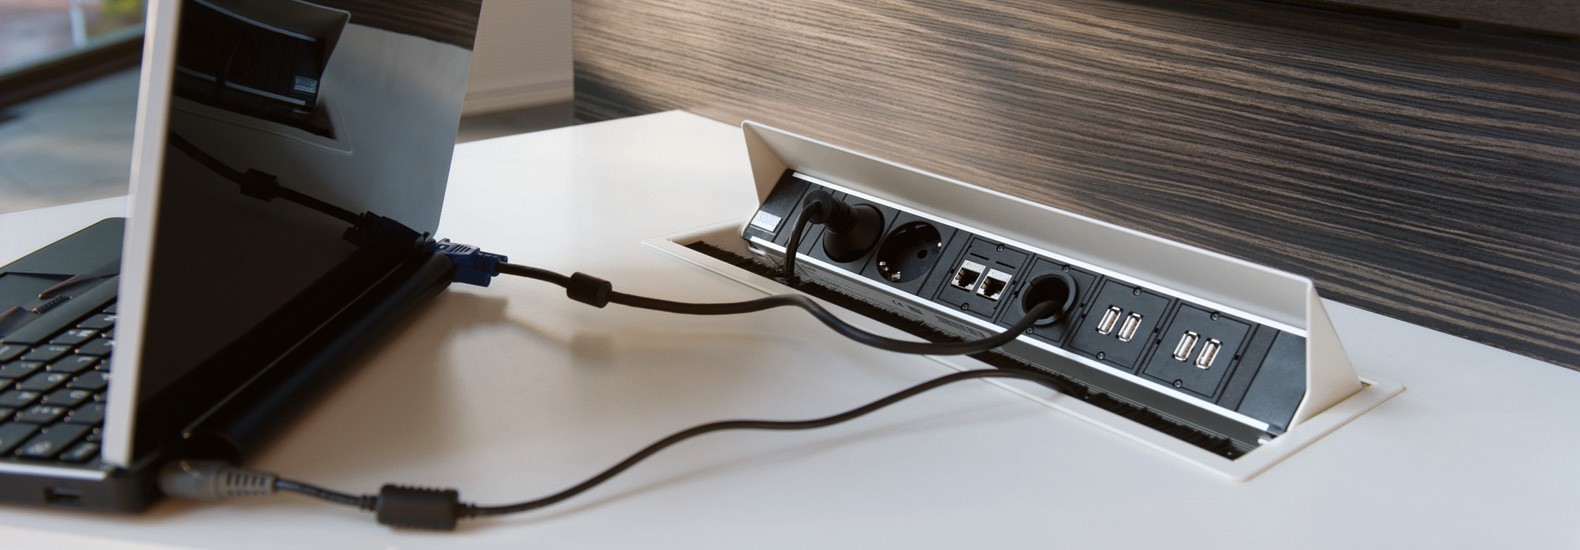 Mit diesen Netboxen erweitern Sie Ihren Schreibtisch mit USB 3.0 Anschlüssen, HDMI und DVI-Buchsen, RJ45-Netzwerkanschlüssen und vielem mehr!